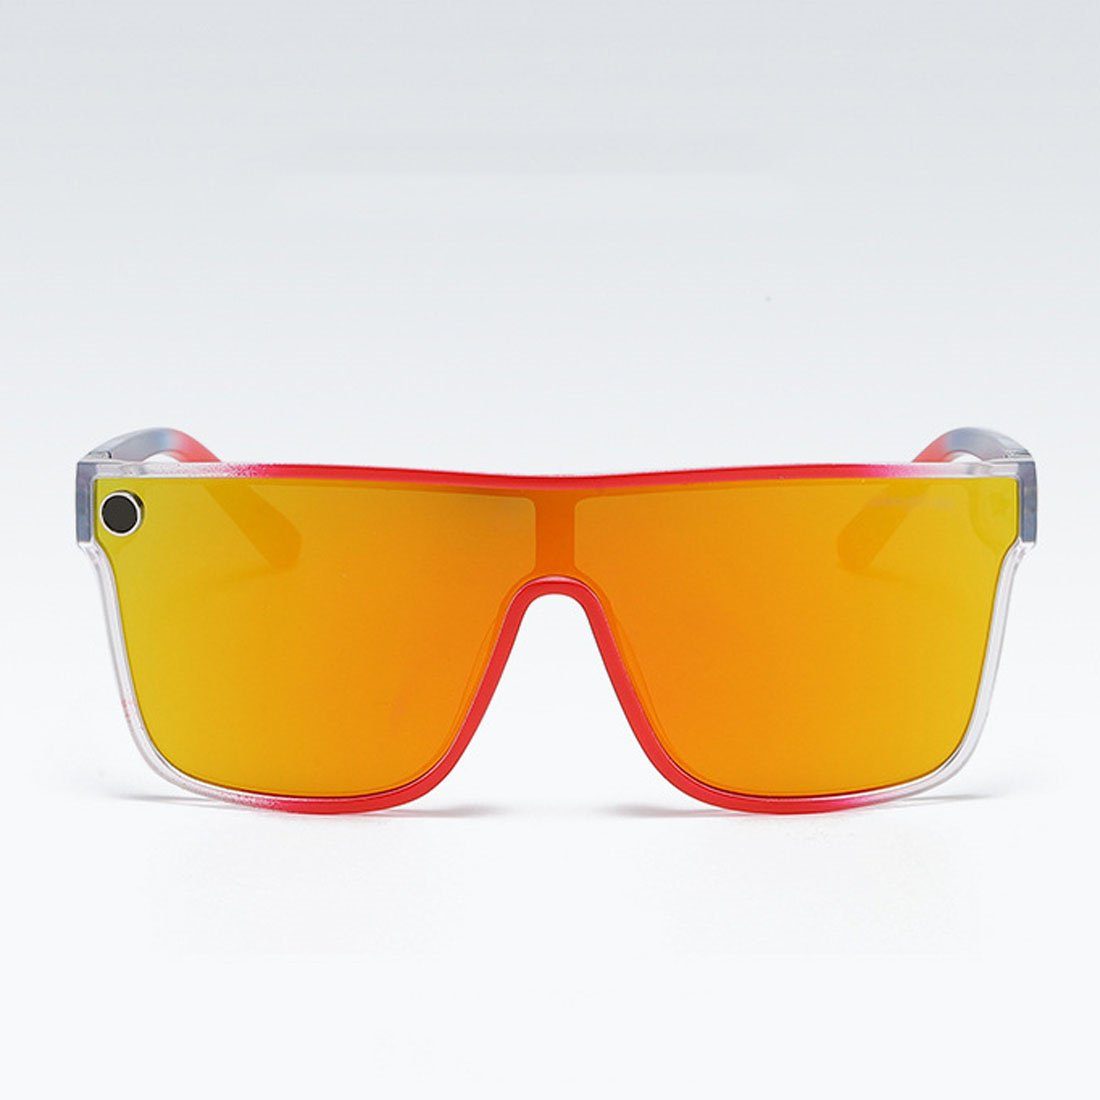 DÖRÖY für Männer und Radsport-Sonnenbrillen Sonnenbrille Outdoor-Sonnenbrillen Frauen,